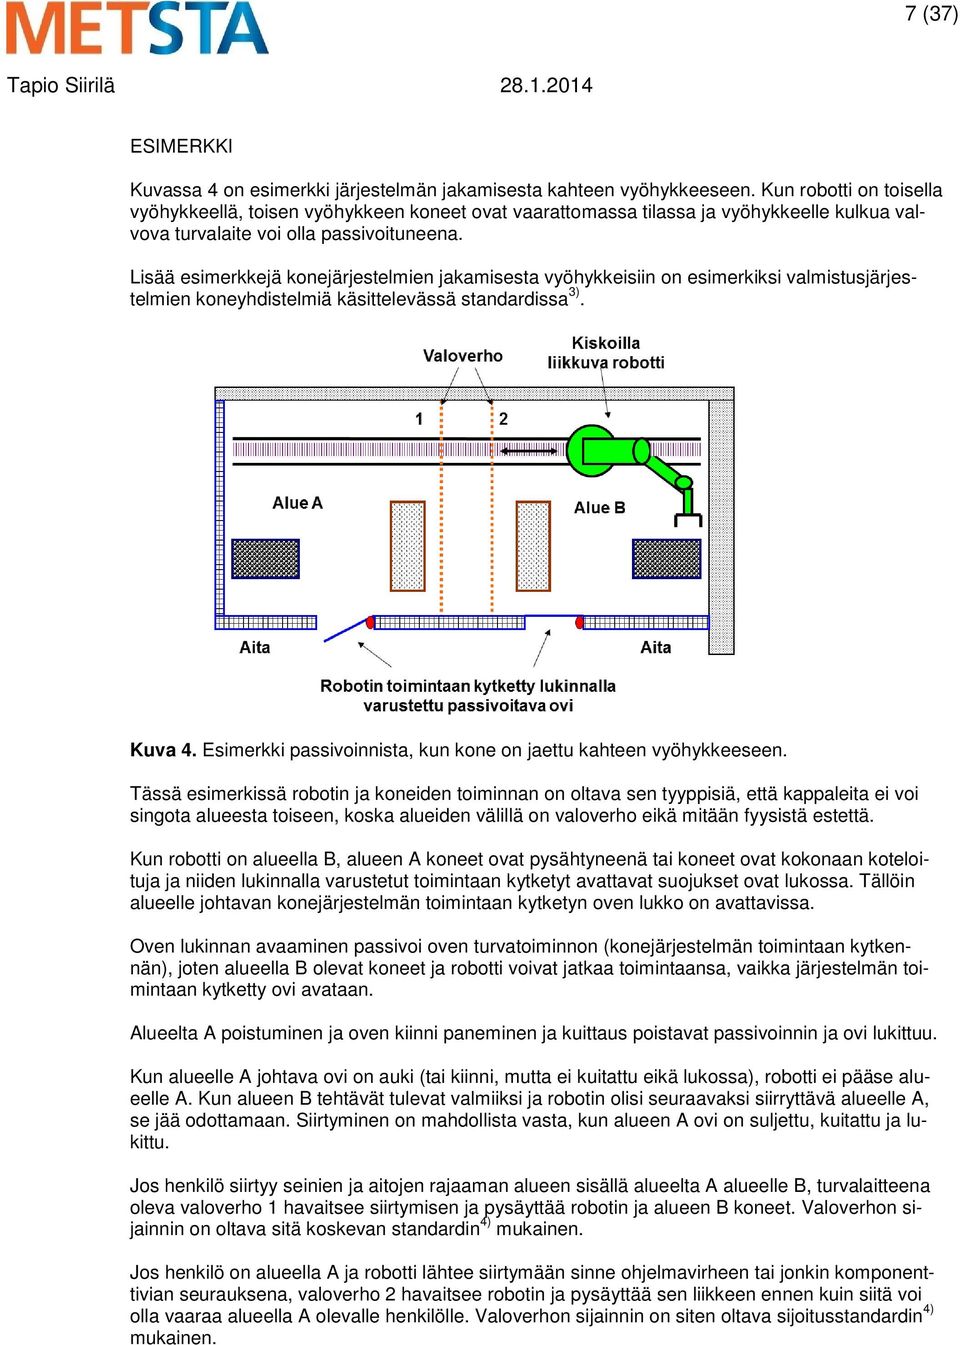 Lisää esimerkkejä konejärjestelmien jakamisesta vyöhykkeisiin on esimerkiksi valmistusjärjestelmien koneyhdistelmiä käsittelevässä standardissa 3). Kuva 4.